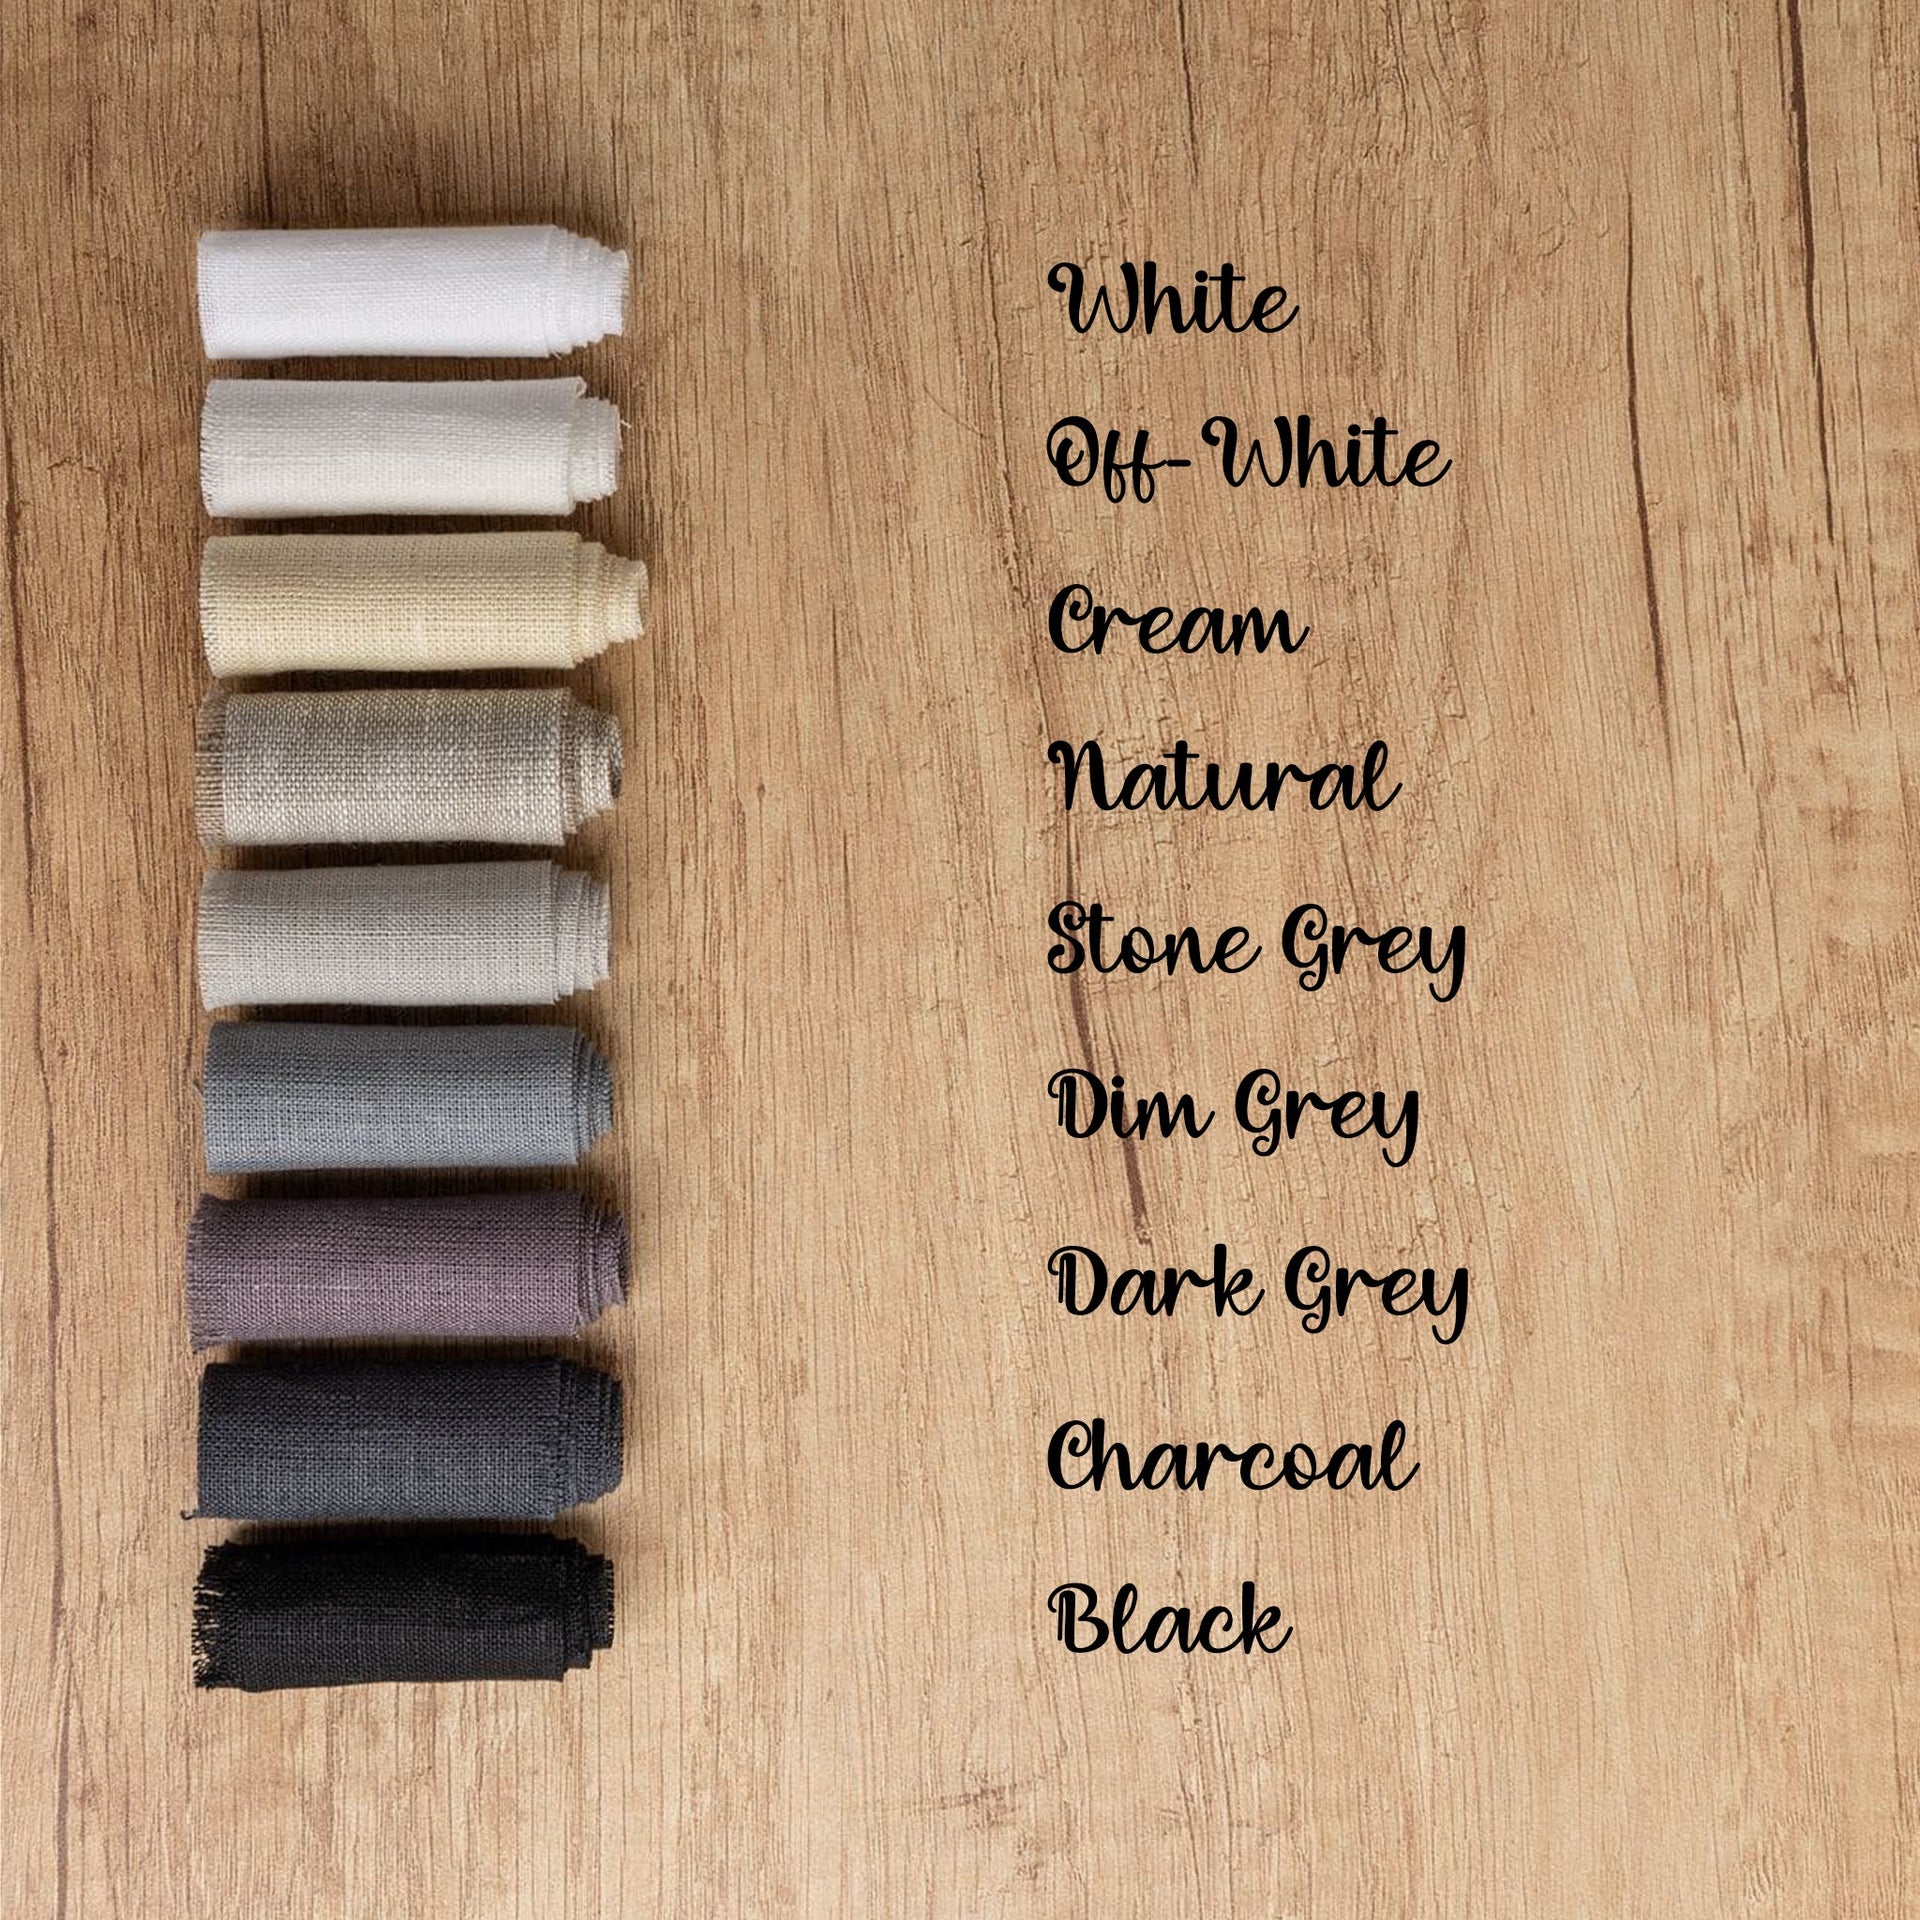 @color:Stone Grey, color:Dim Grey, color:Black, color:Dark Grey, color:White, color:Off-White, color:Cream, color:Natural, color:Dark Grey, color:Charcoal